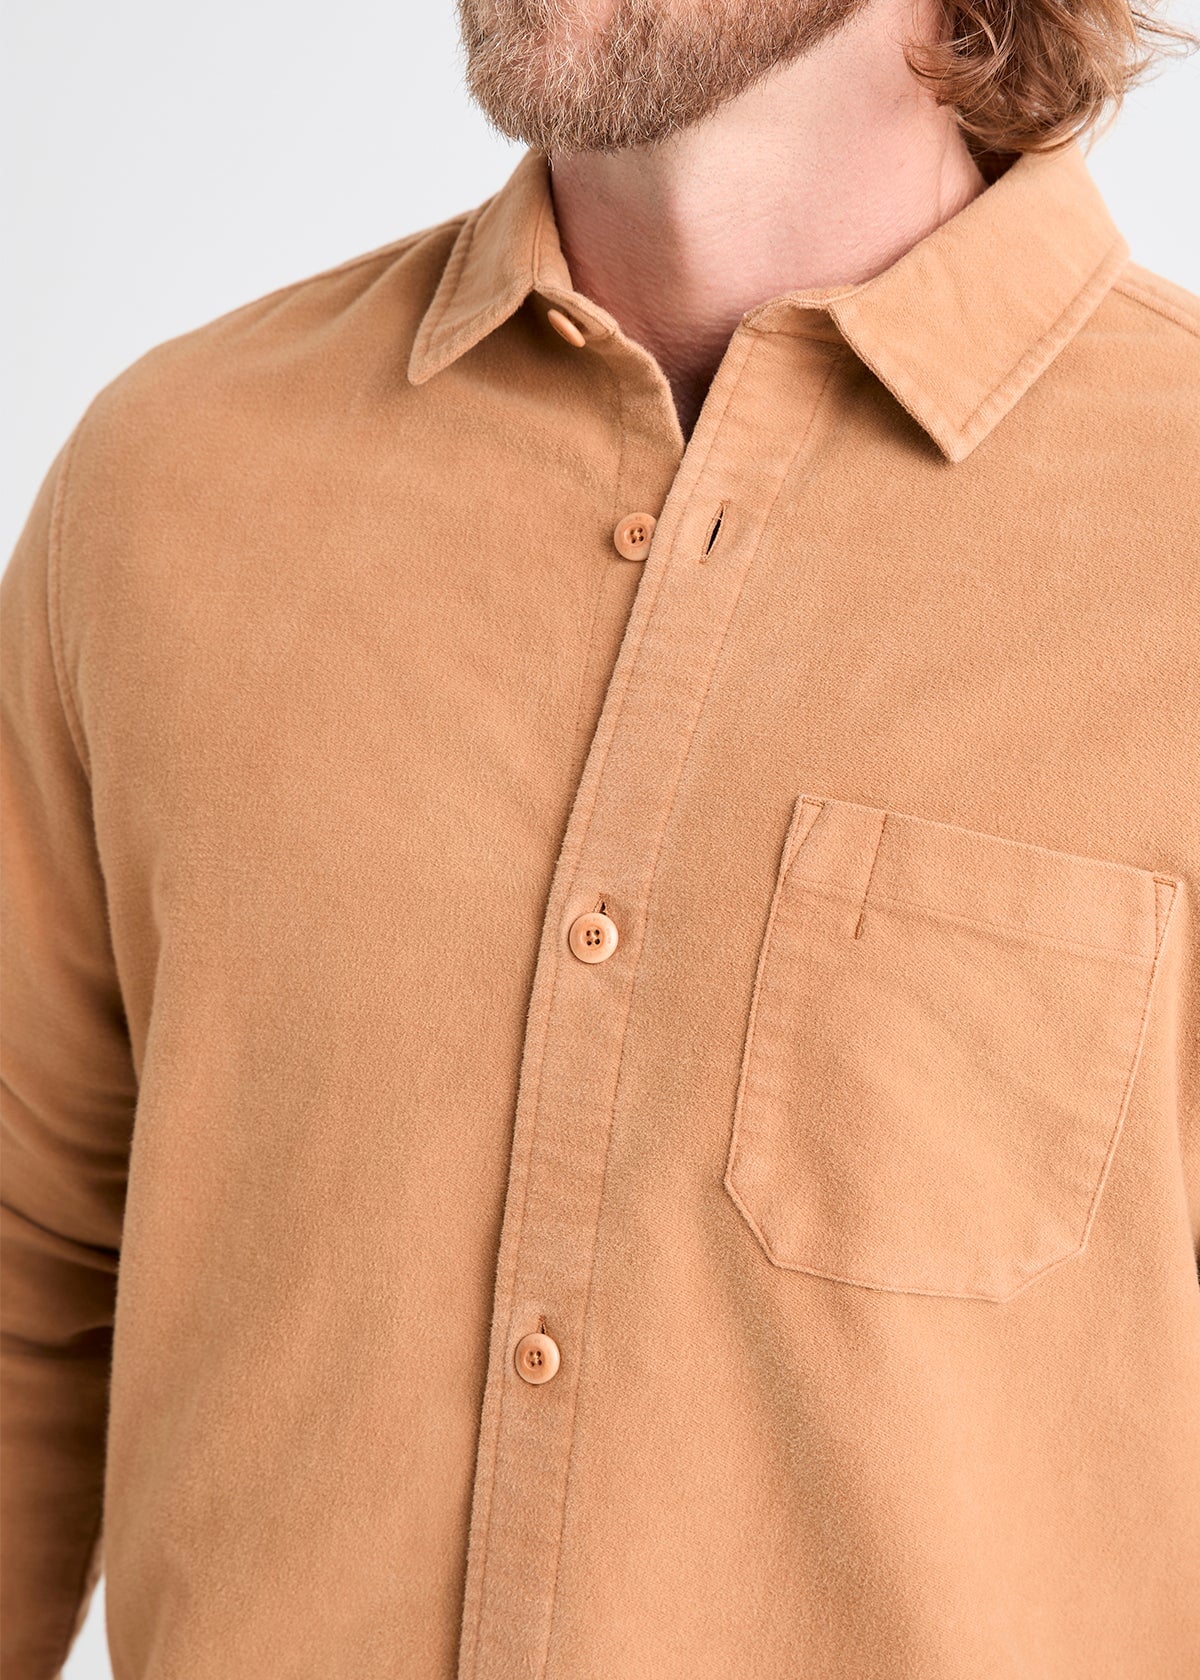 mens light brown relaxed moleskin button up shirt collar and neckline detail